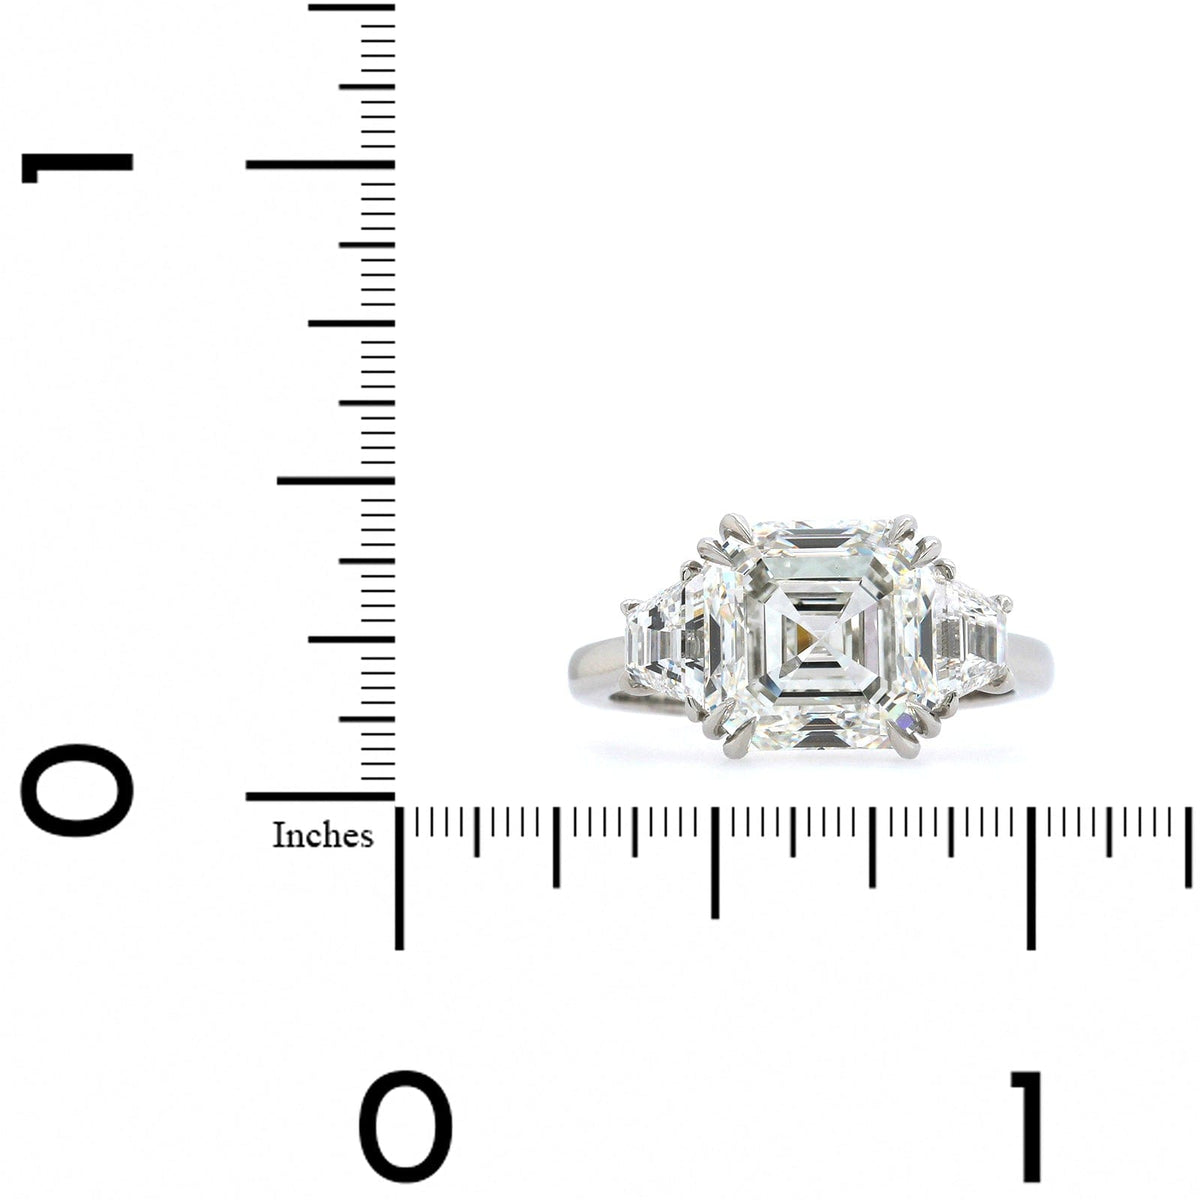 Platinum Asscher Cut Diamond 3 Stone Engagement Ring